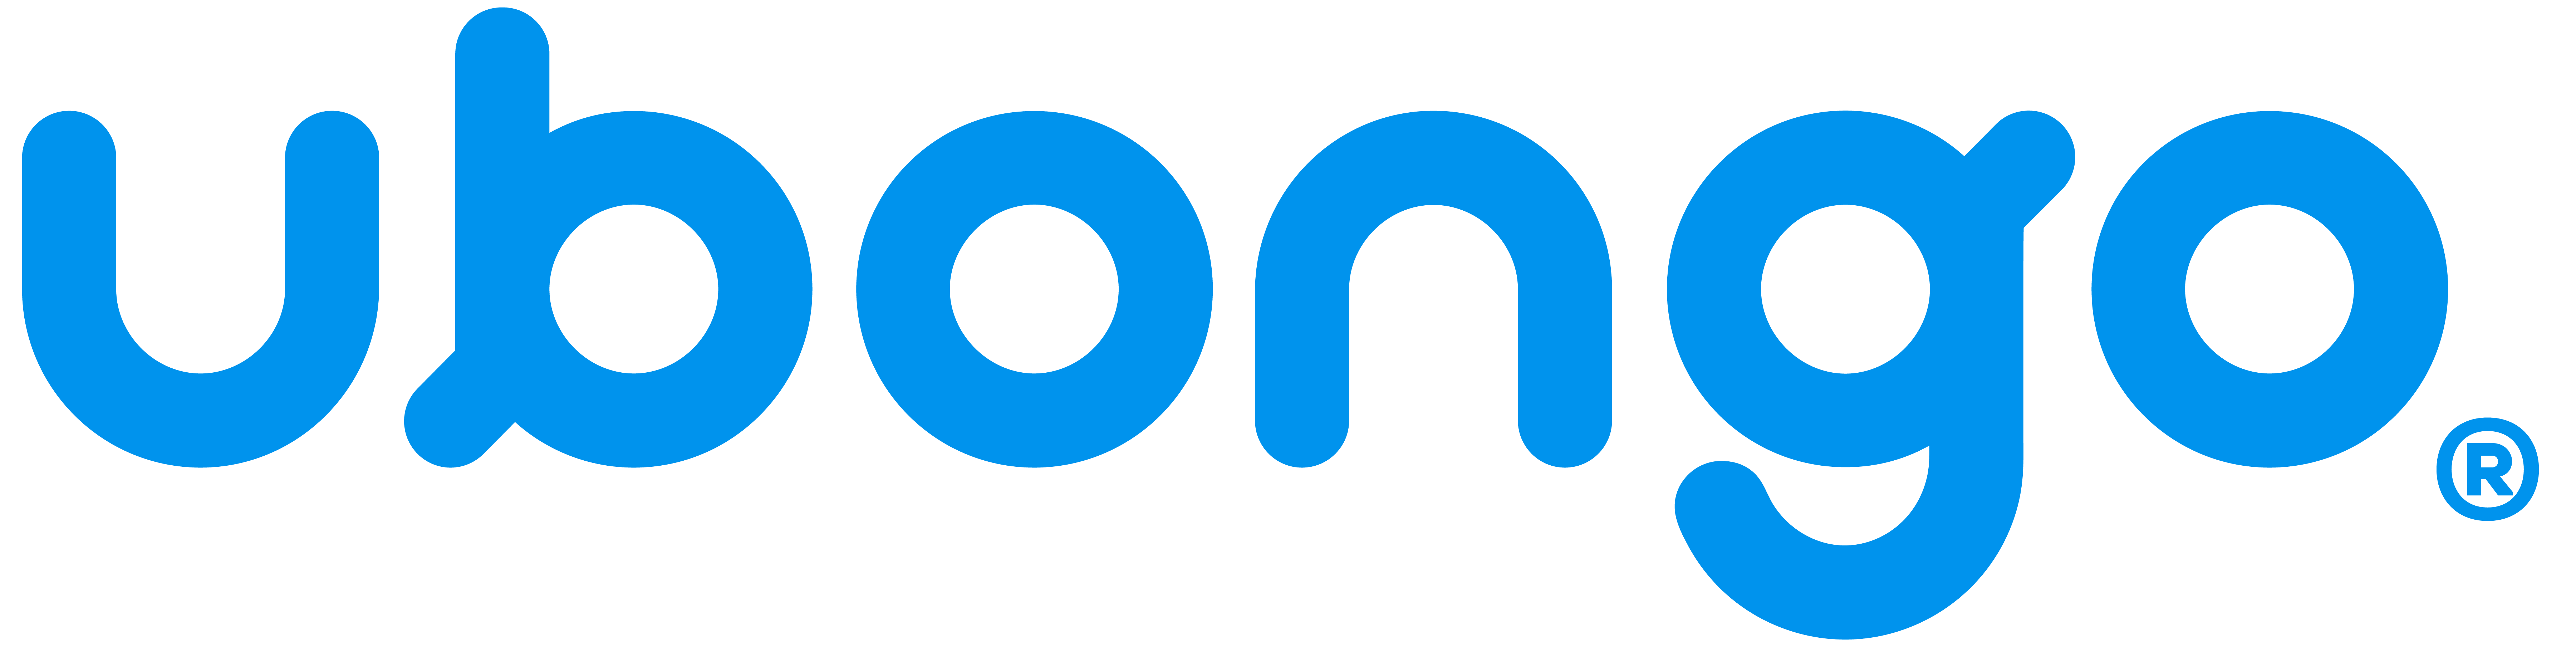 Ubongo corporate logo